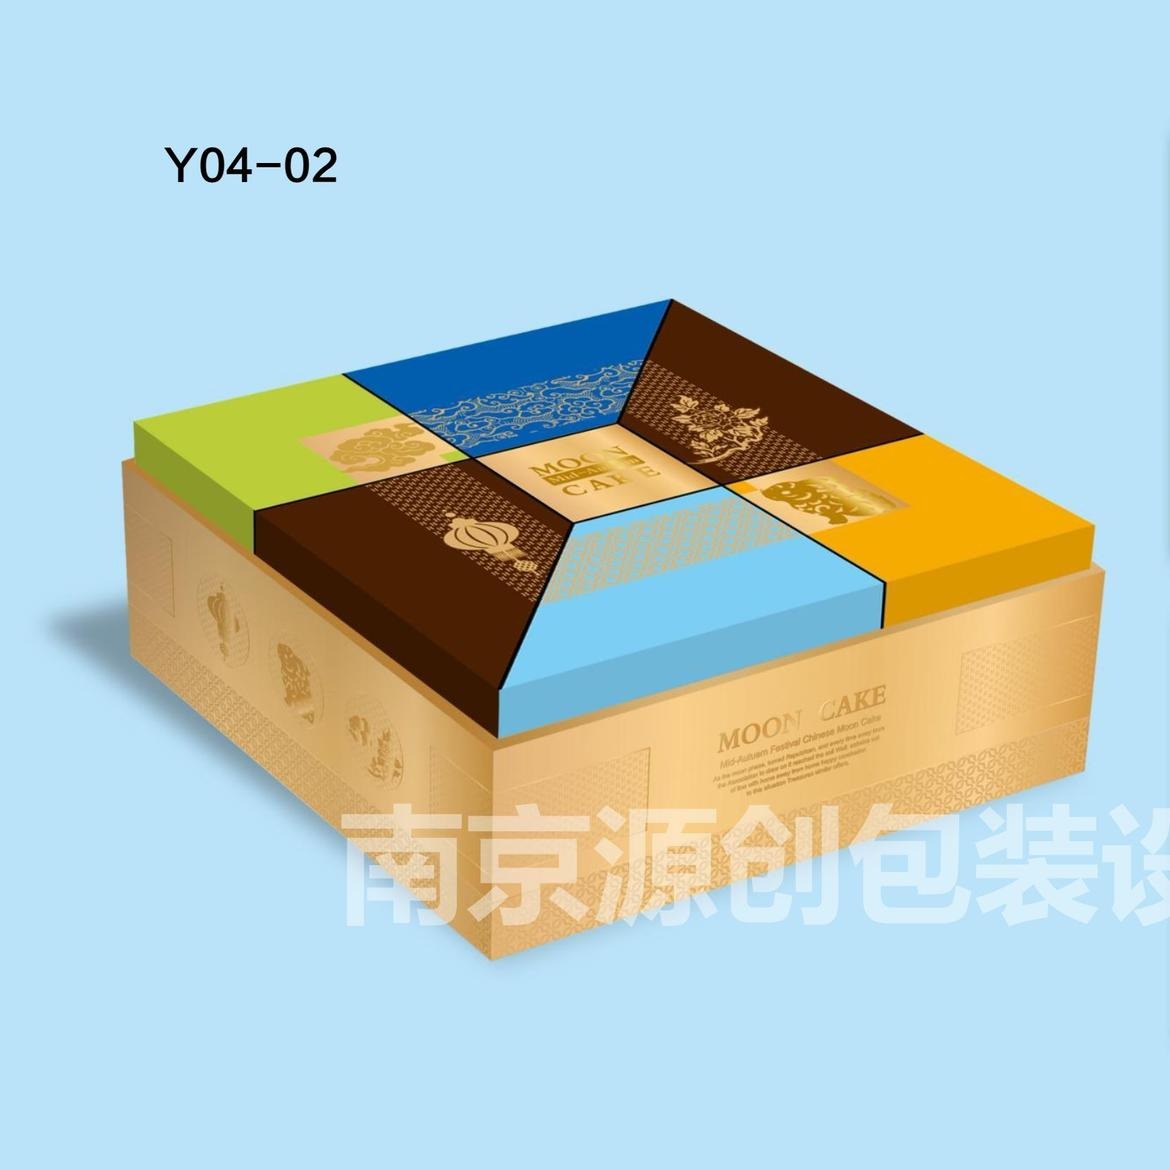 月饼包装盒定制 南京月饼礼盒厂家 月饼盒设计 月饼礼盒生产 南京包装礼盒定制